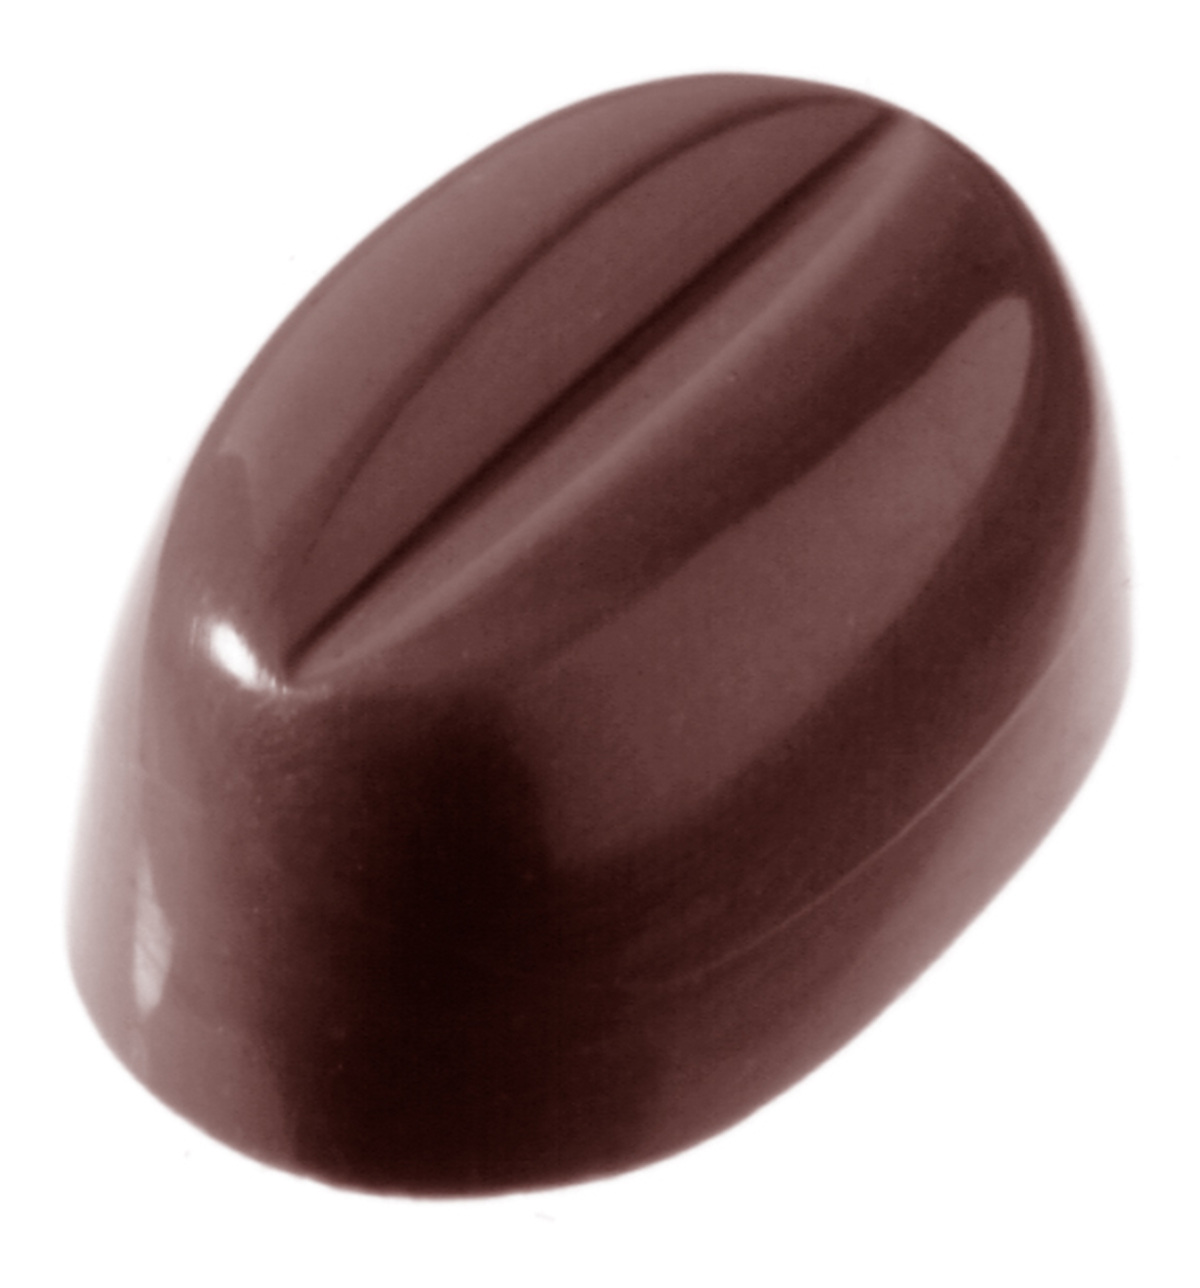 Professionel chokoladeform i polycarbonat - Coffee bean CW1327